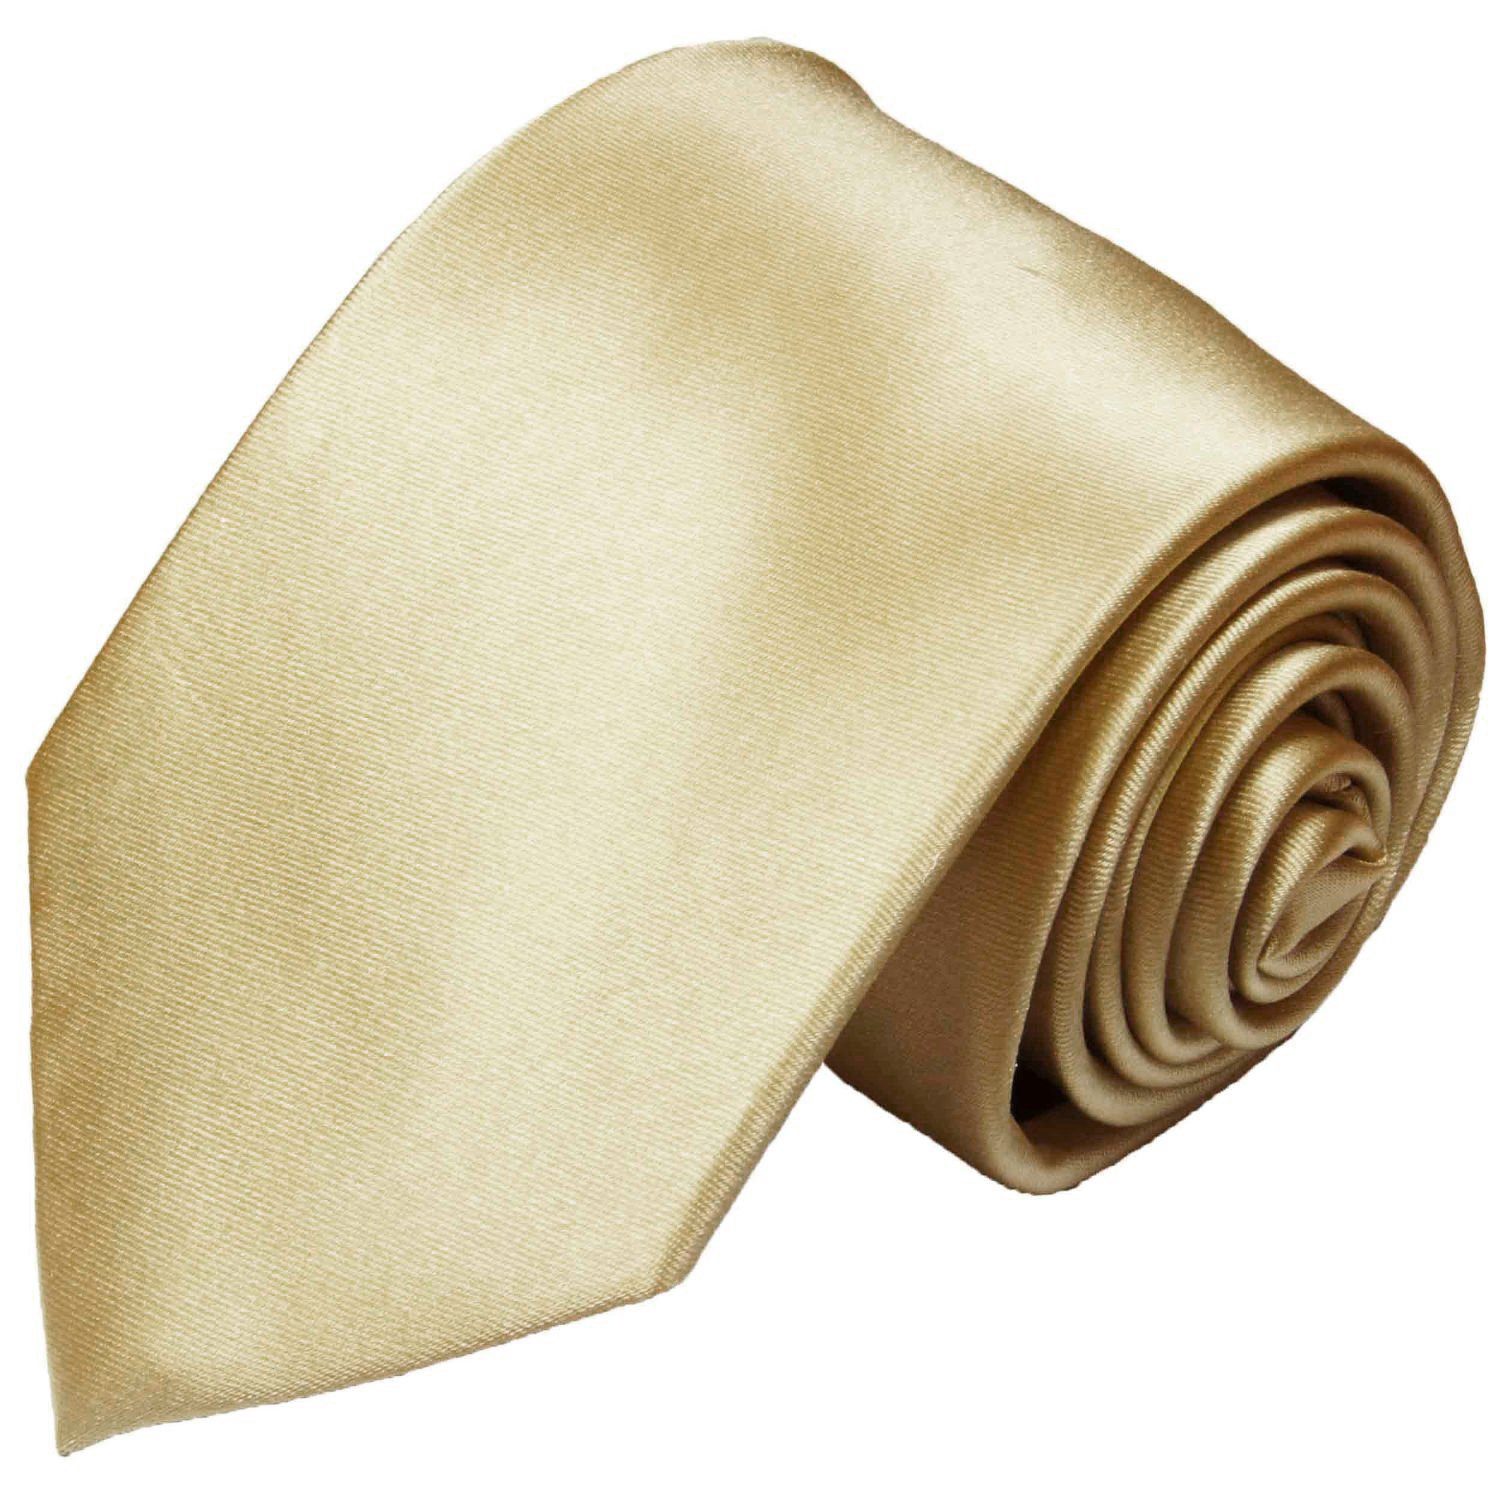 Paul Malone Krawatte für Herren Uni Krawatte Sandfarben